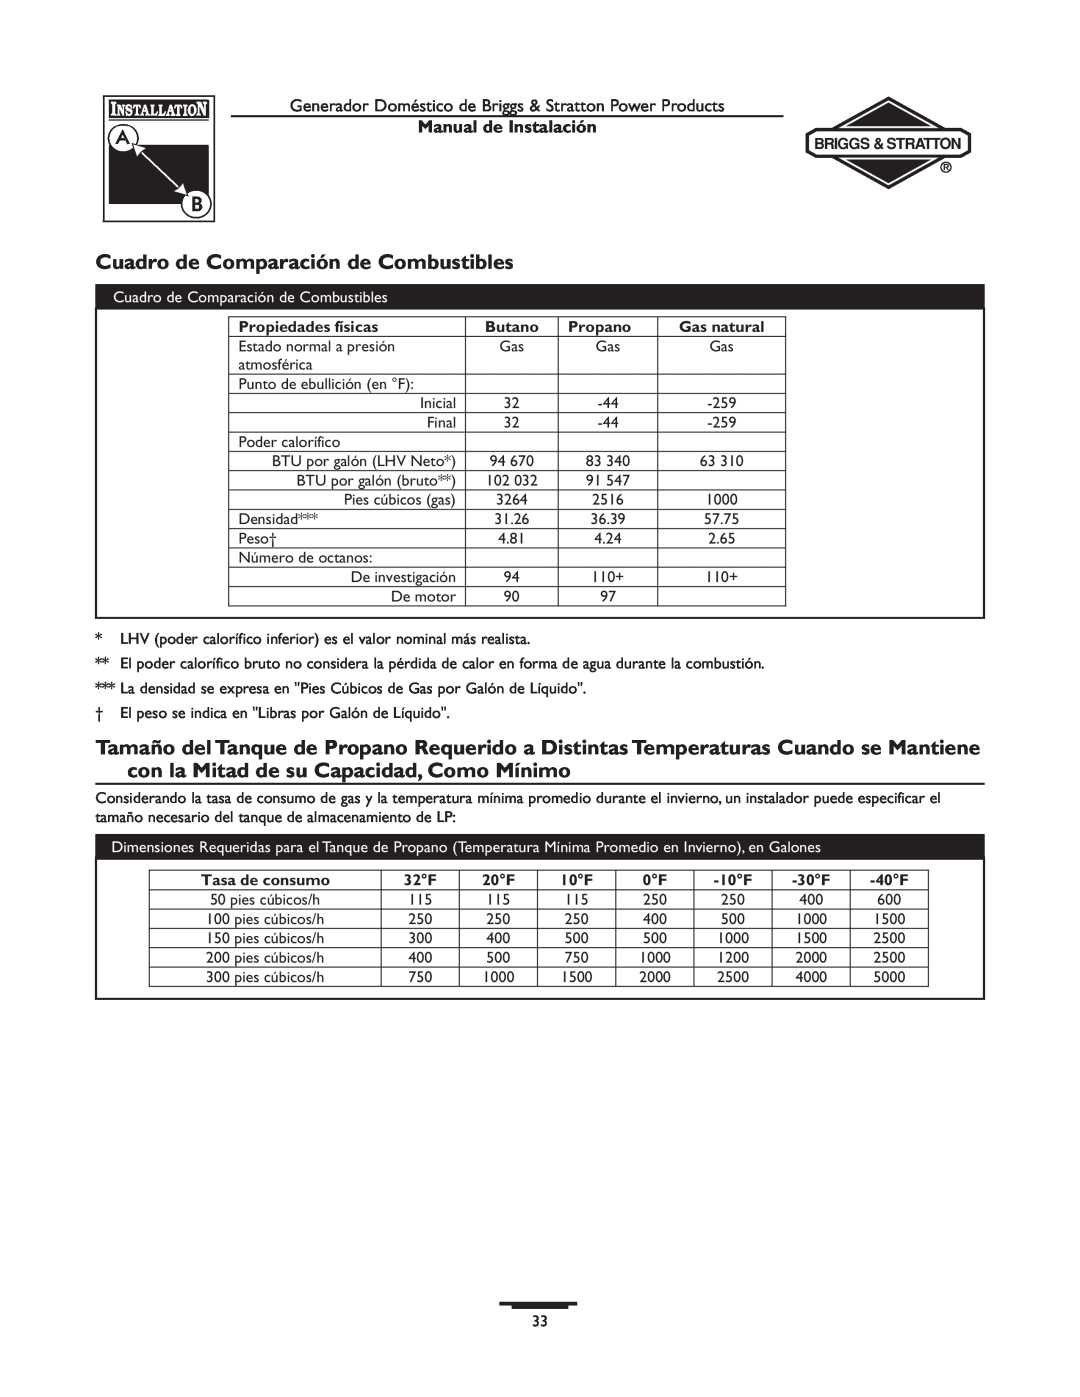 Briggs & Stratton 01815-0 manual Cuadro de Comparación de Combustibles, Manual de Instalación, Propiedades físicas, Butano 